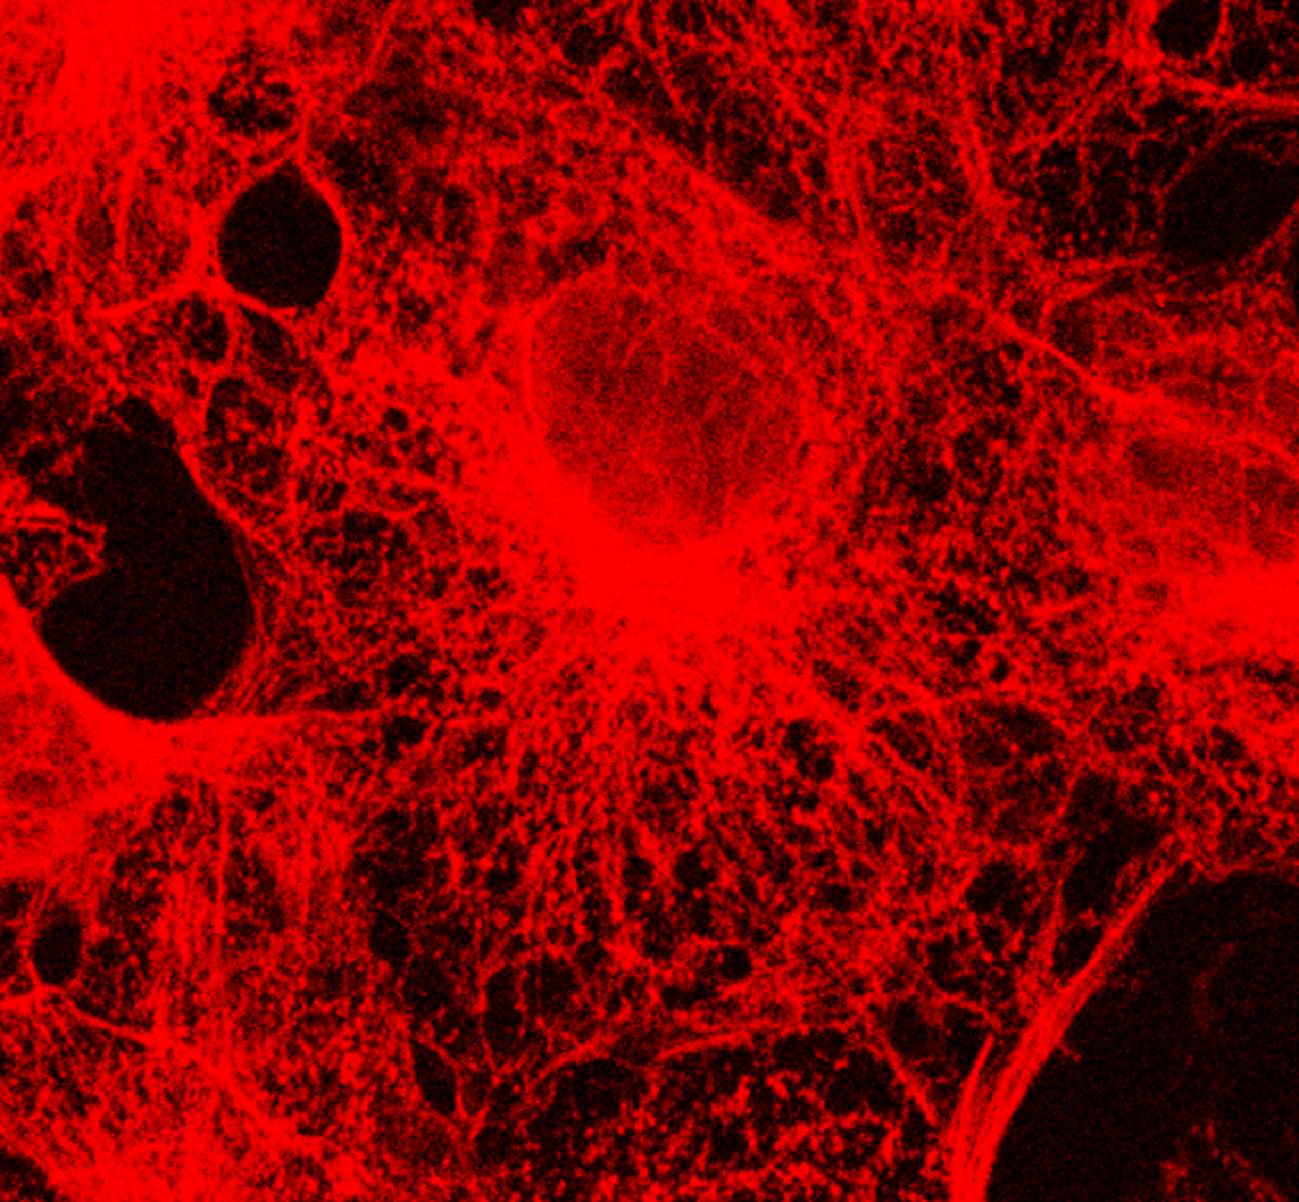 Células en cultivo con su citoesqueleto marcado por moléculas fluorescente